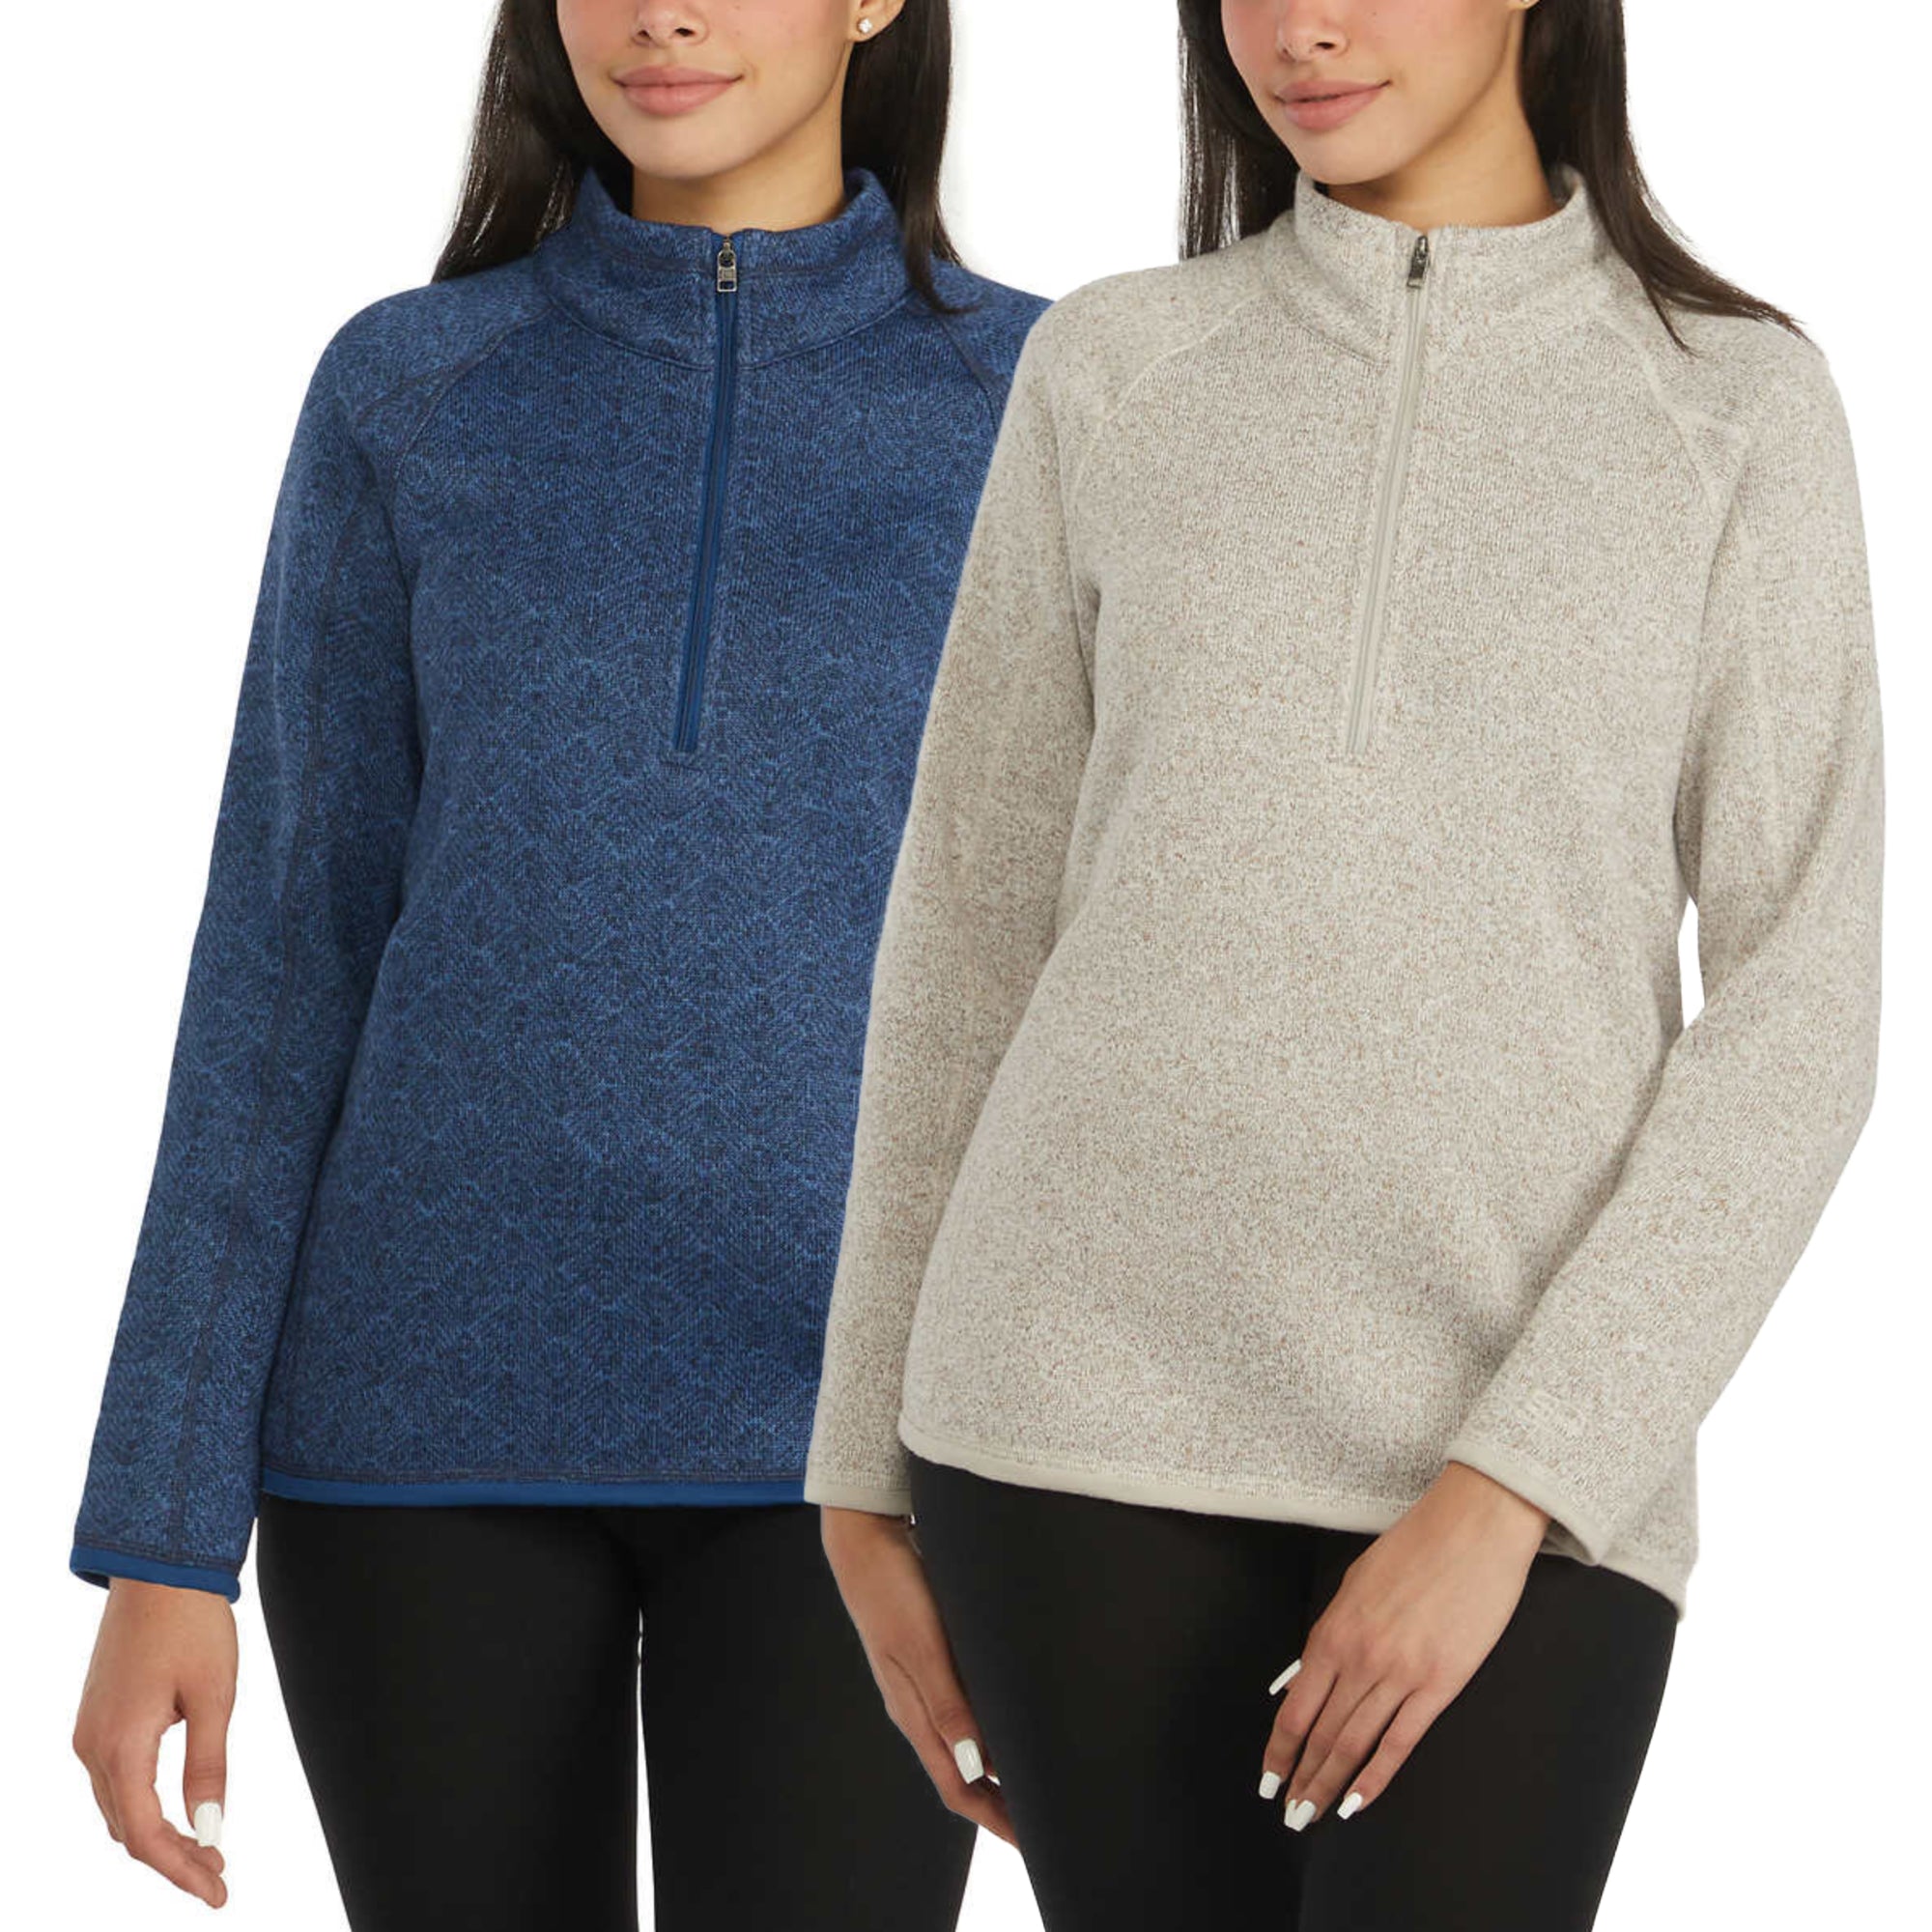 Storm Pack Ladies' Sweater Fleece Quarter Zip